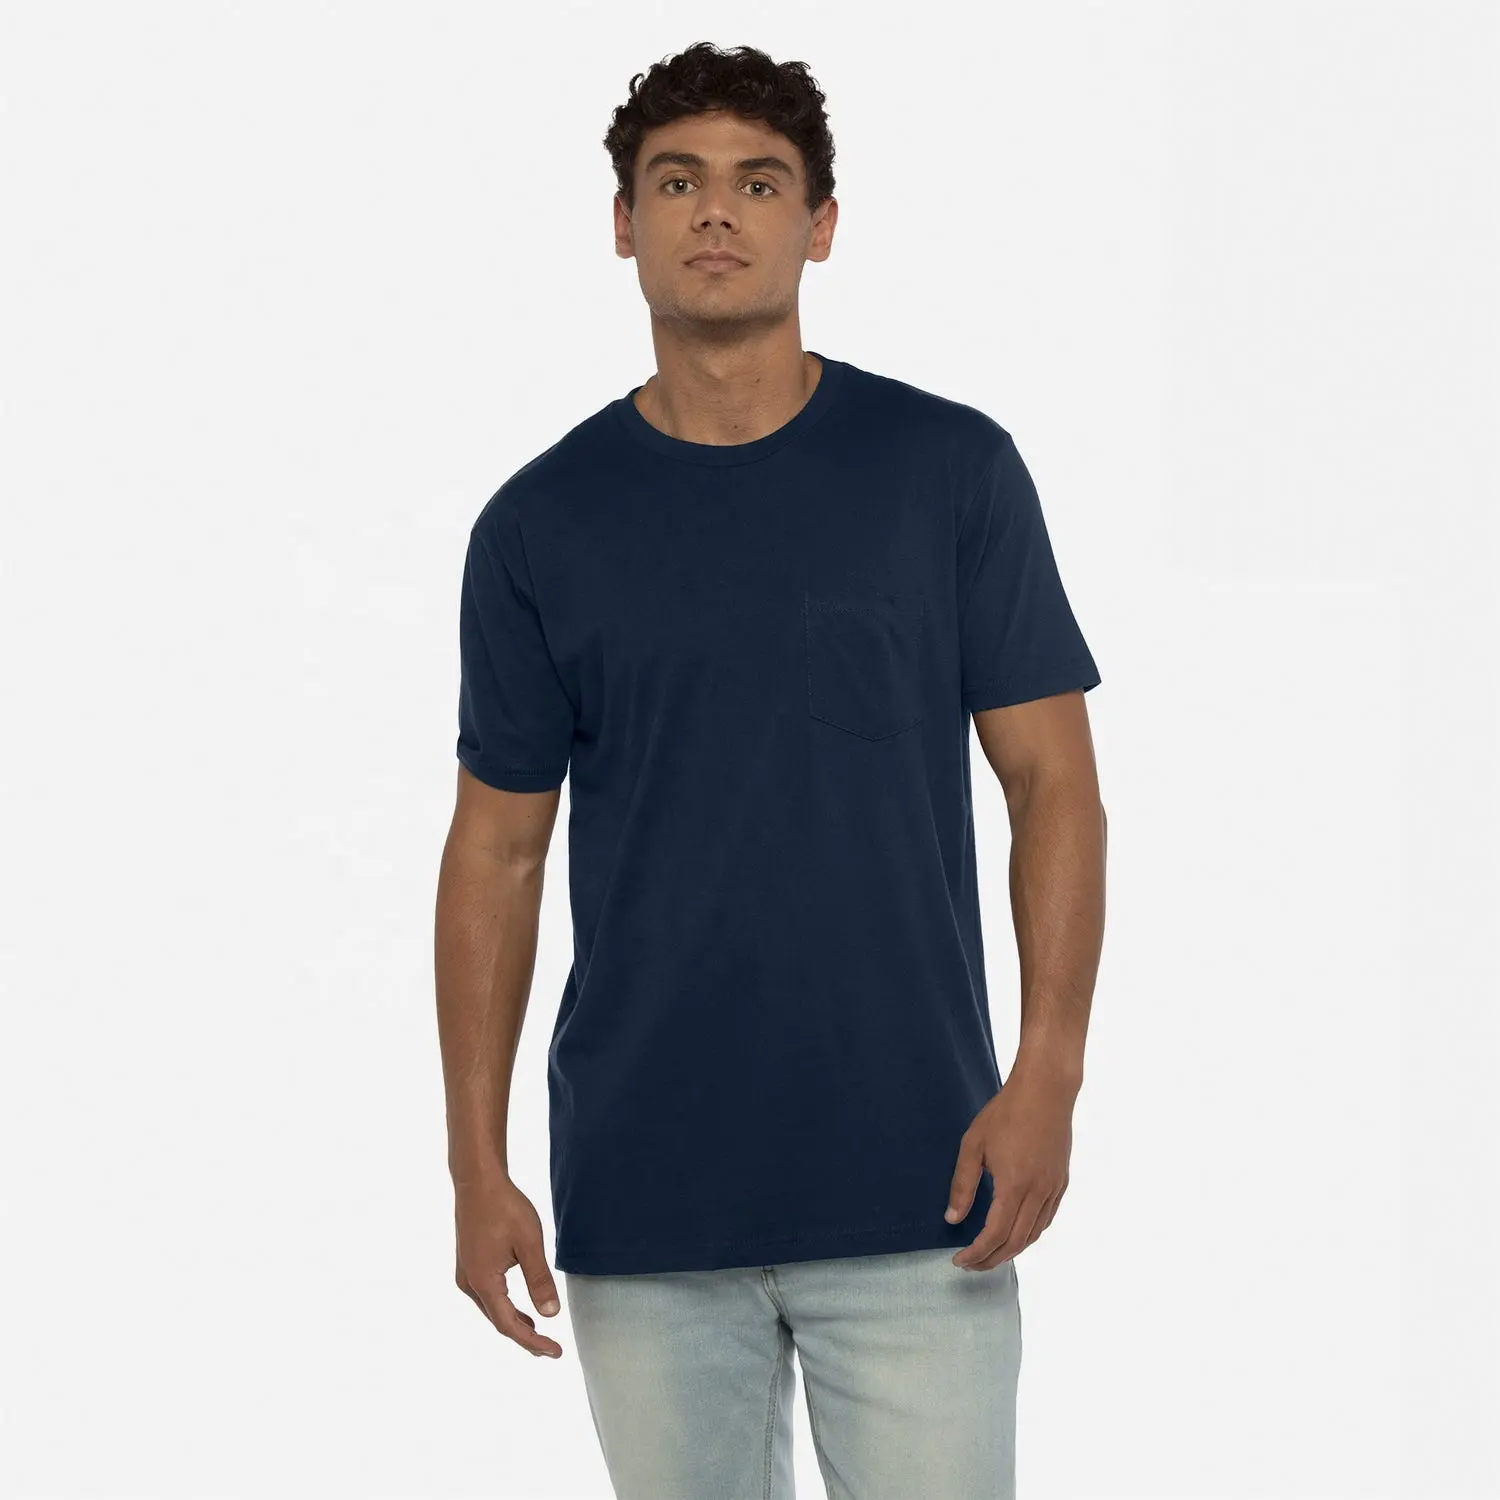 Одежда следующего уровня, 3605 стиль, темно-синяя футболка унисекс с хлопковым карманом, дышащая футболка унисекс с карманом из хлопка с вашим собственным логотипом